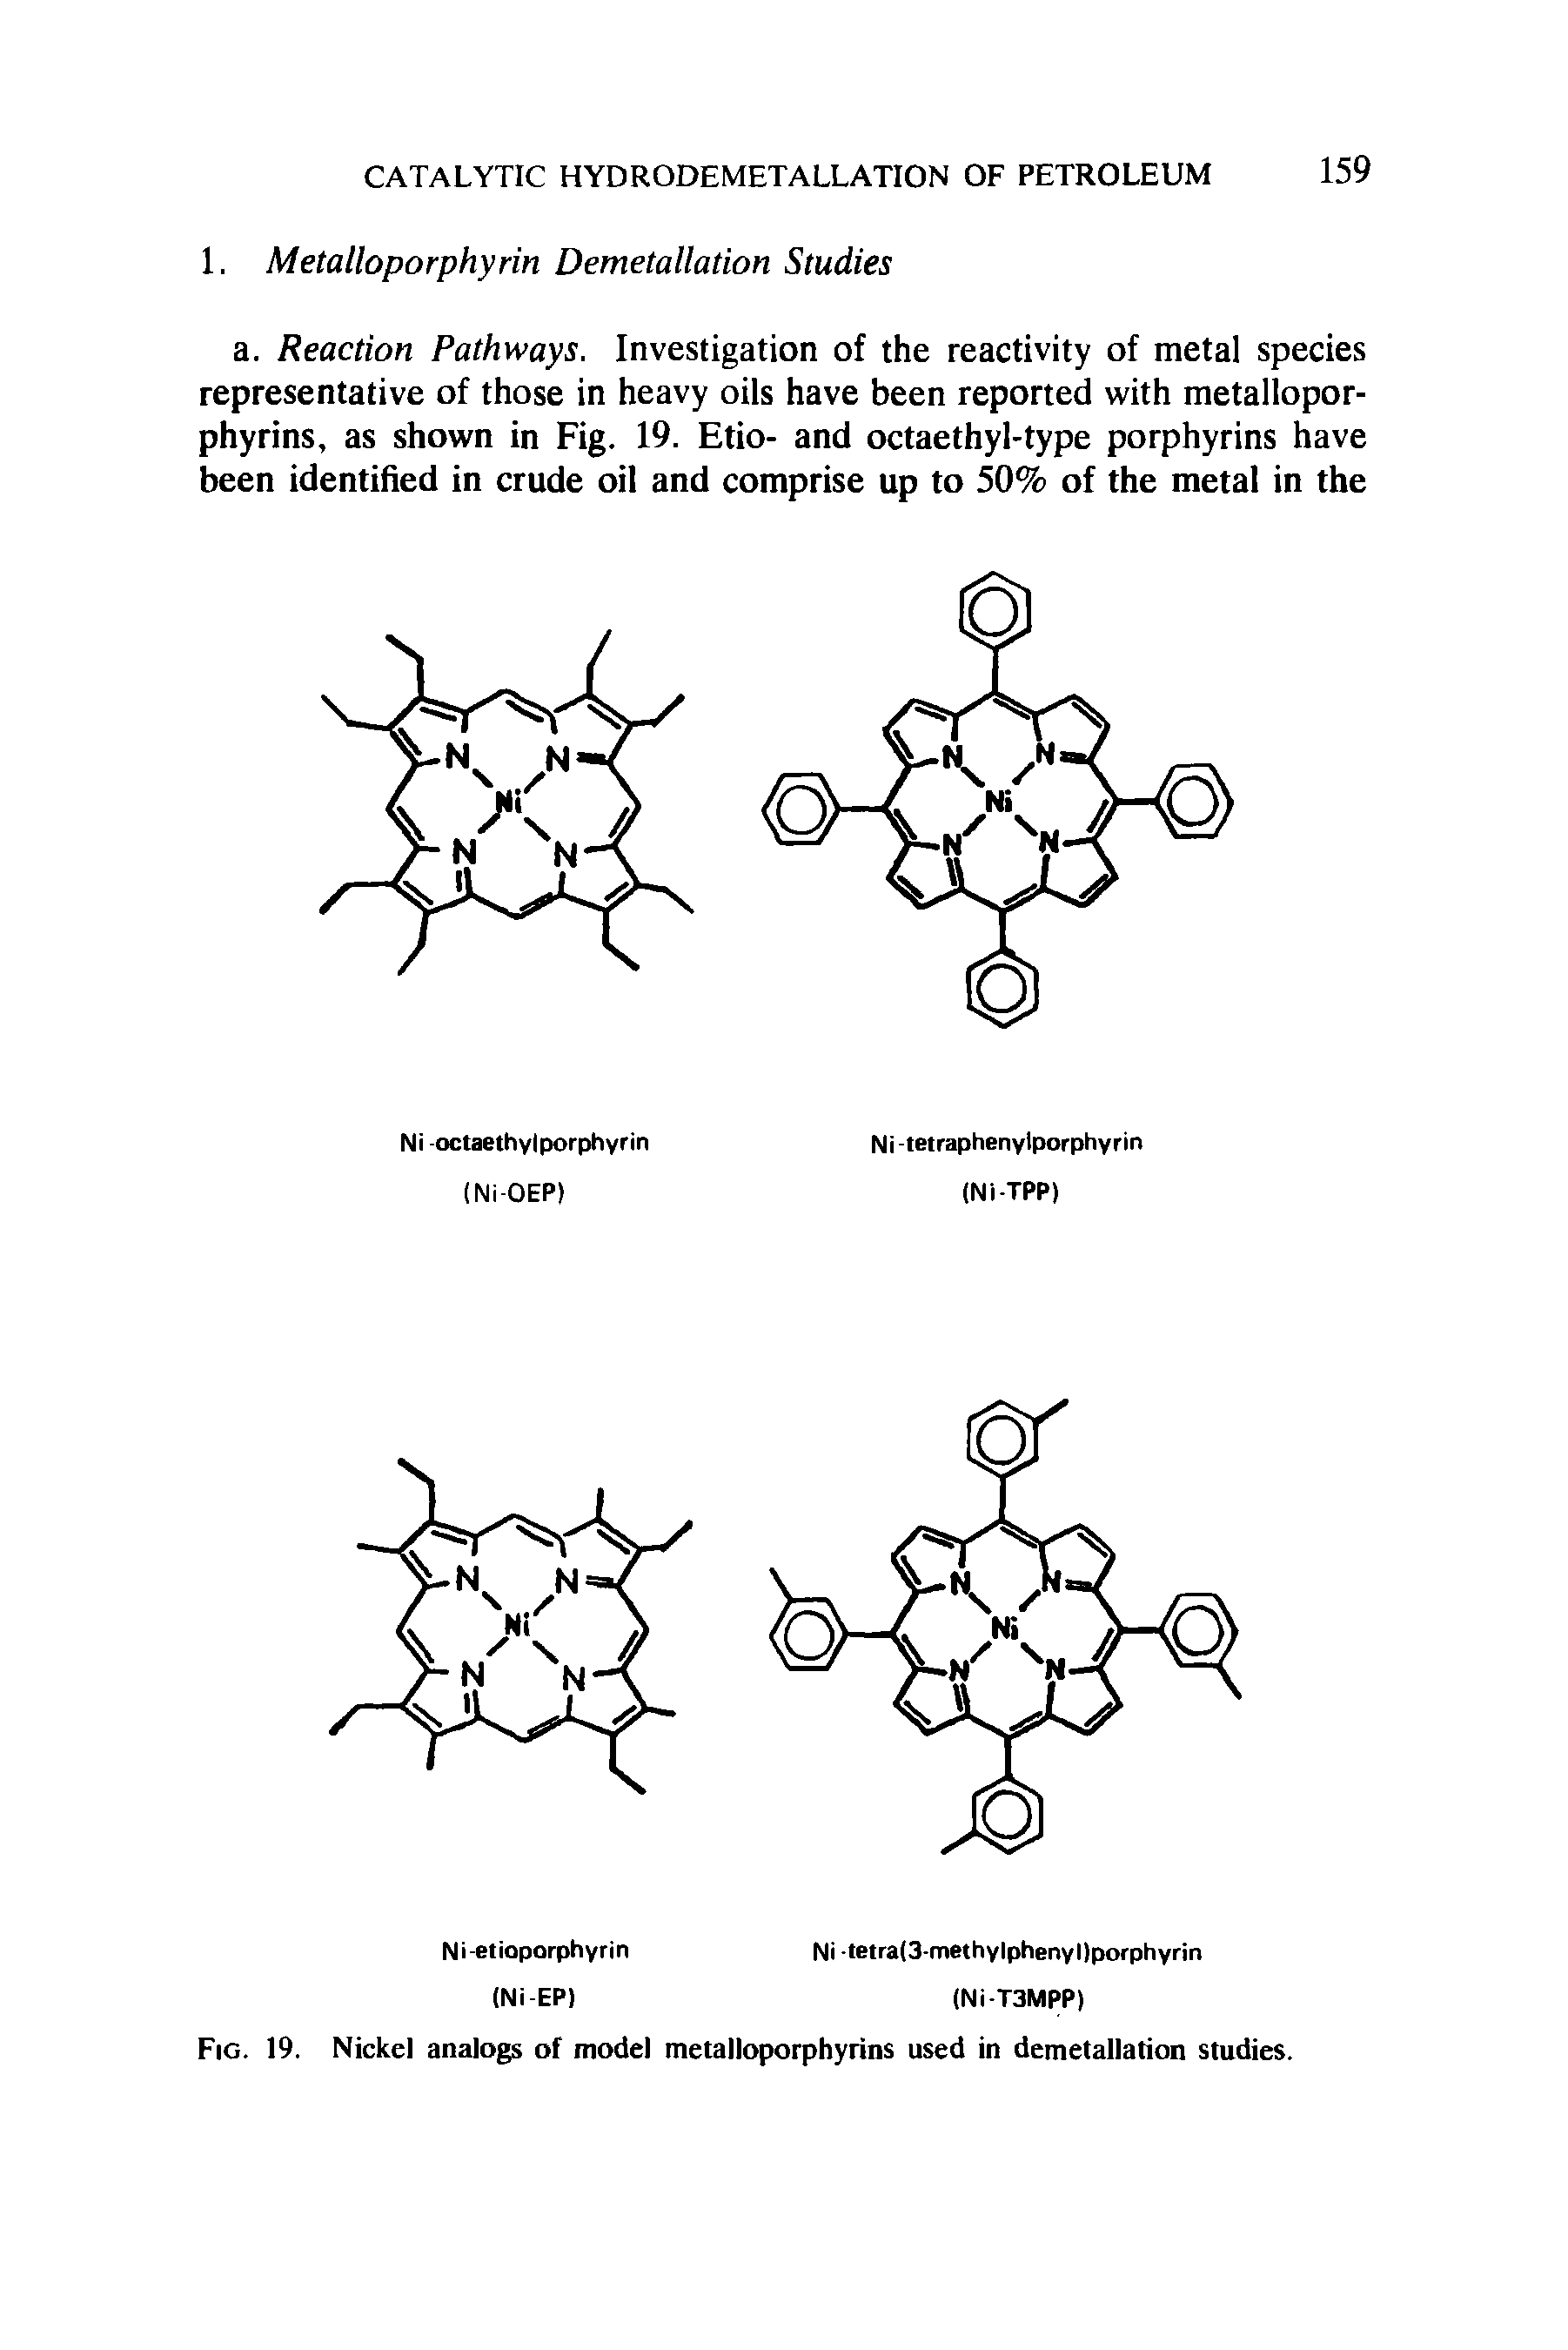 Fig. 19. Nickel analogs of model metalloporphyrins used in demetallation studies.